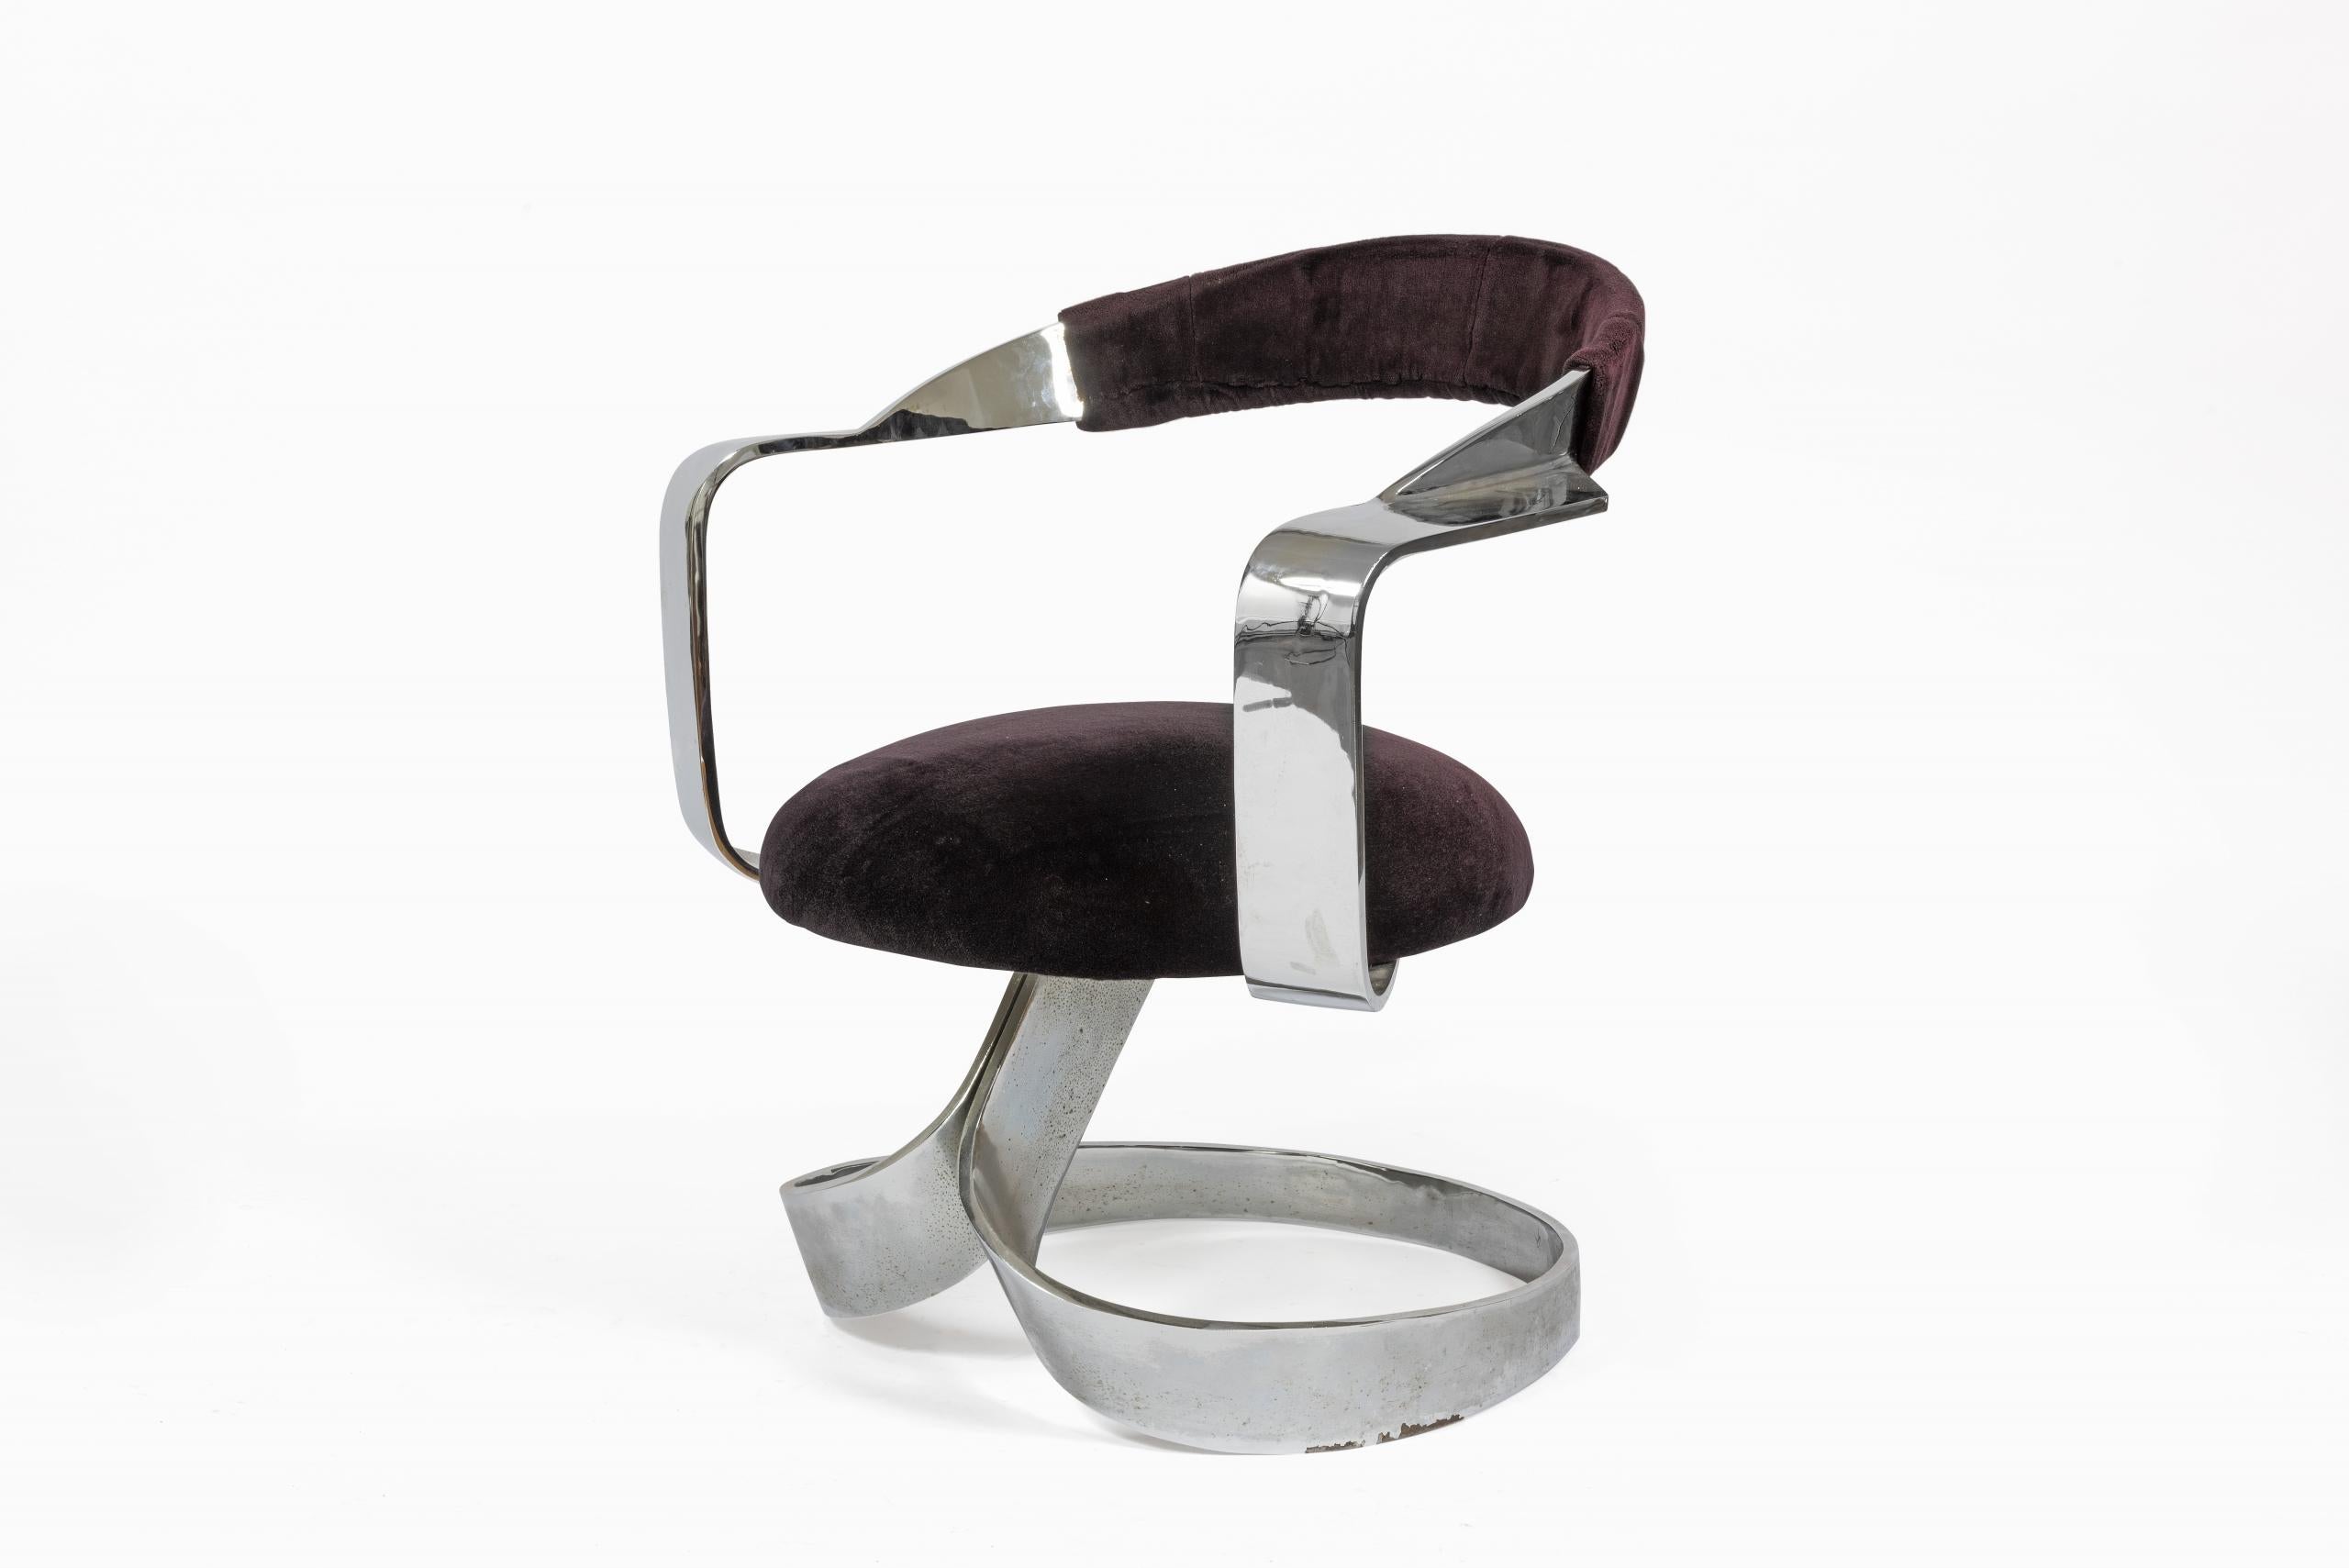 Ensemble de 4 chaises et une table à manger en acier inoxydable, Design de 1968, édition New Look Española SA.

Les chaises sont en velours et le musée du Design de Barcelone en conserve une du même modèle, MADB 135827. Traces d'usure. Dimensions